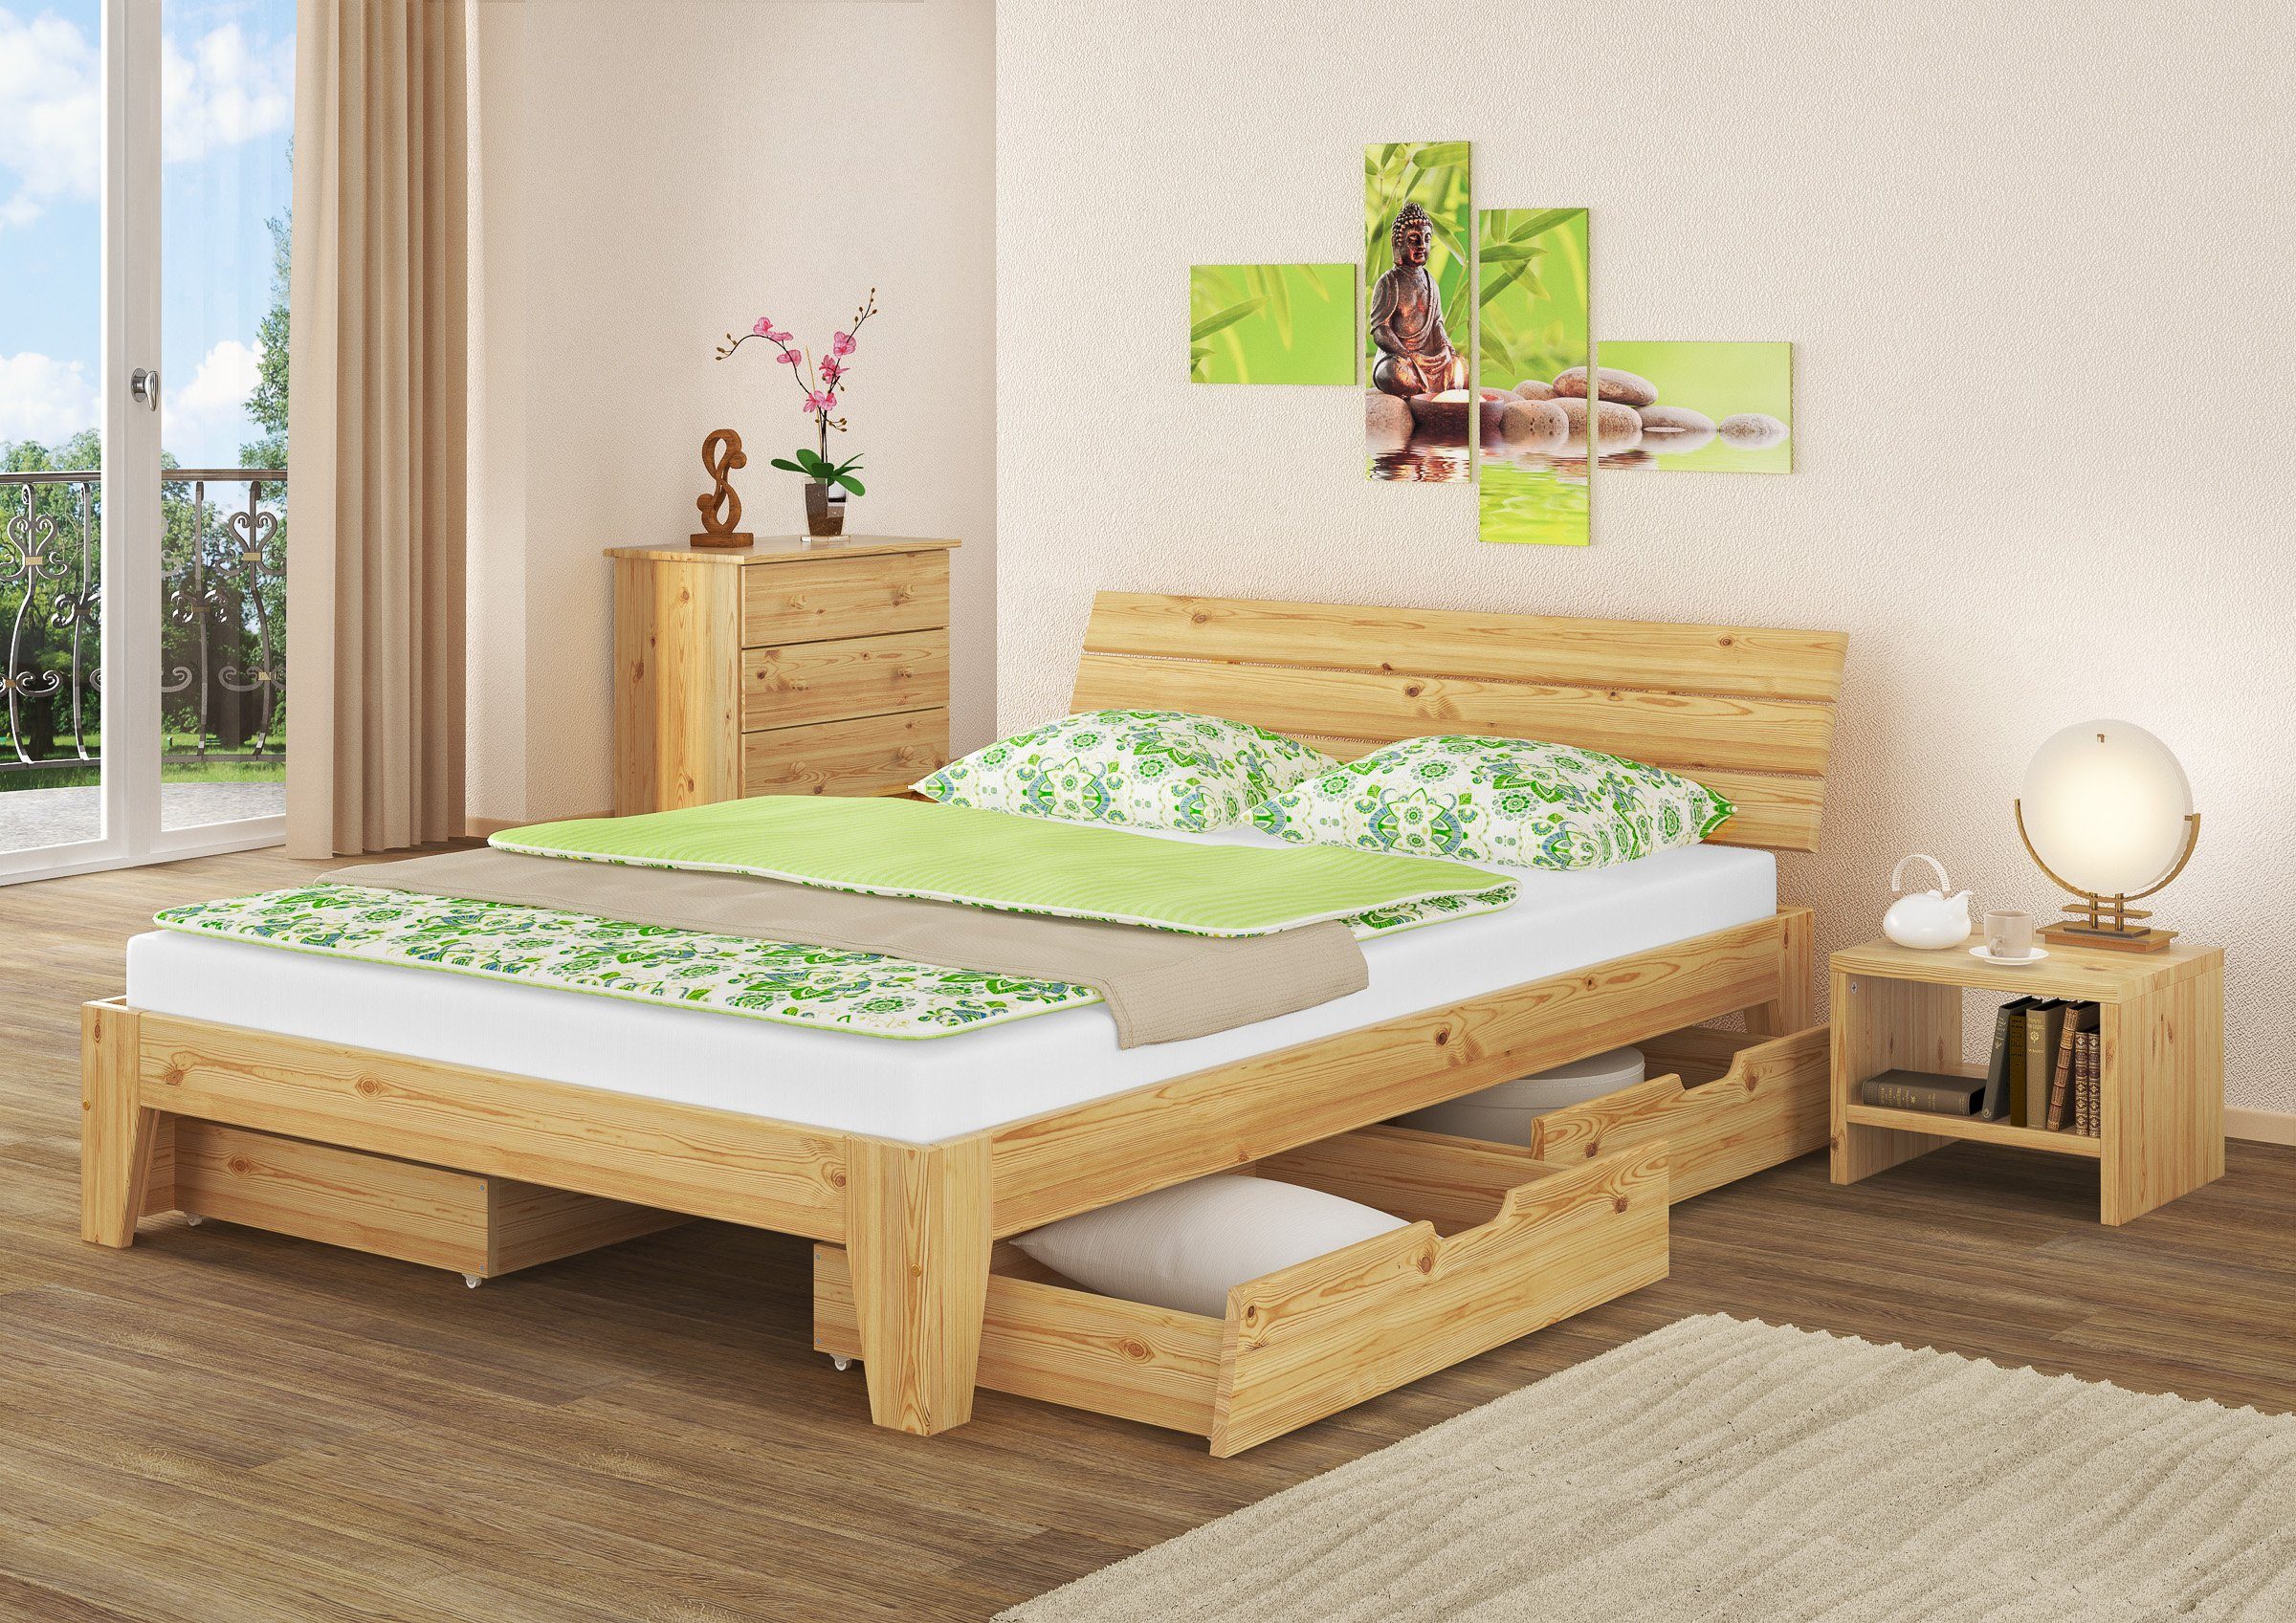 ERST-HOLZ massiv wählbar, Echtholzbett Kieferfarblos Kiefer Zubehör natur lackiert Bett Doppelbett